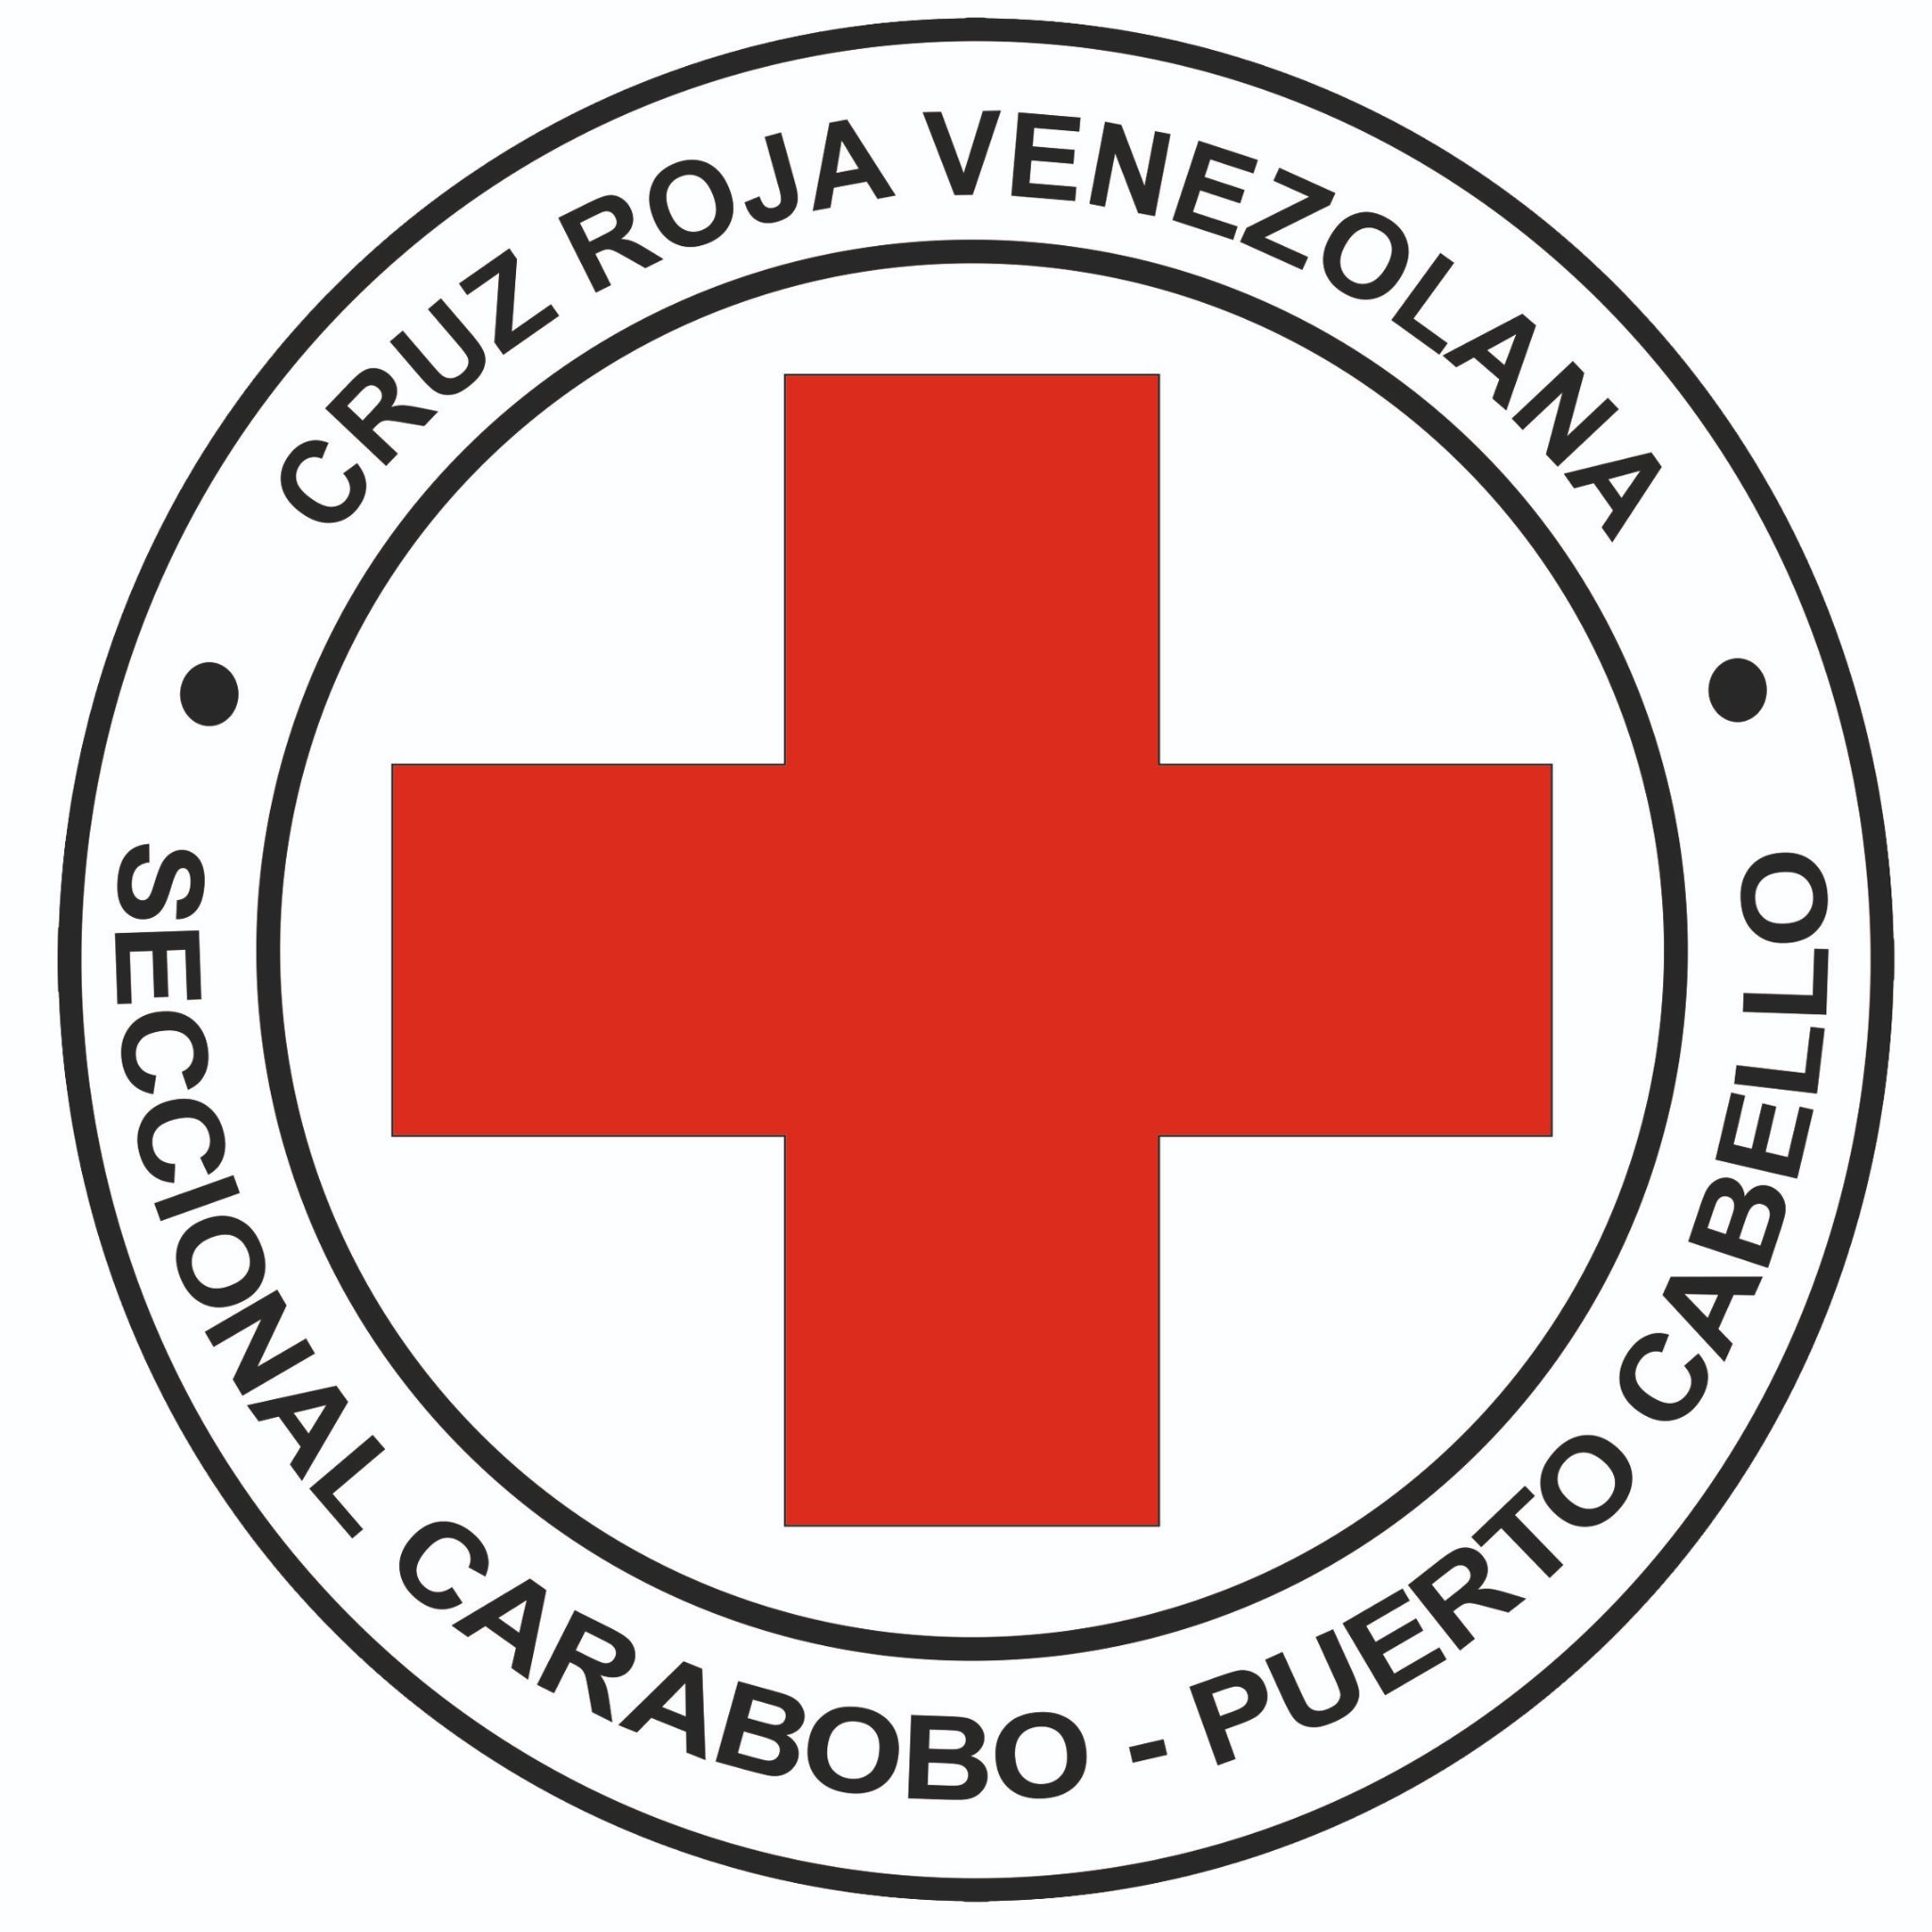 Cuenta Oficial de la Cruz Roja Venezolana Seccional Carabobo - Puerto Cabello